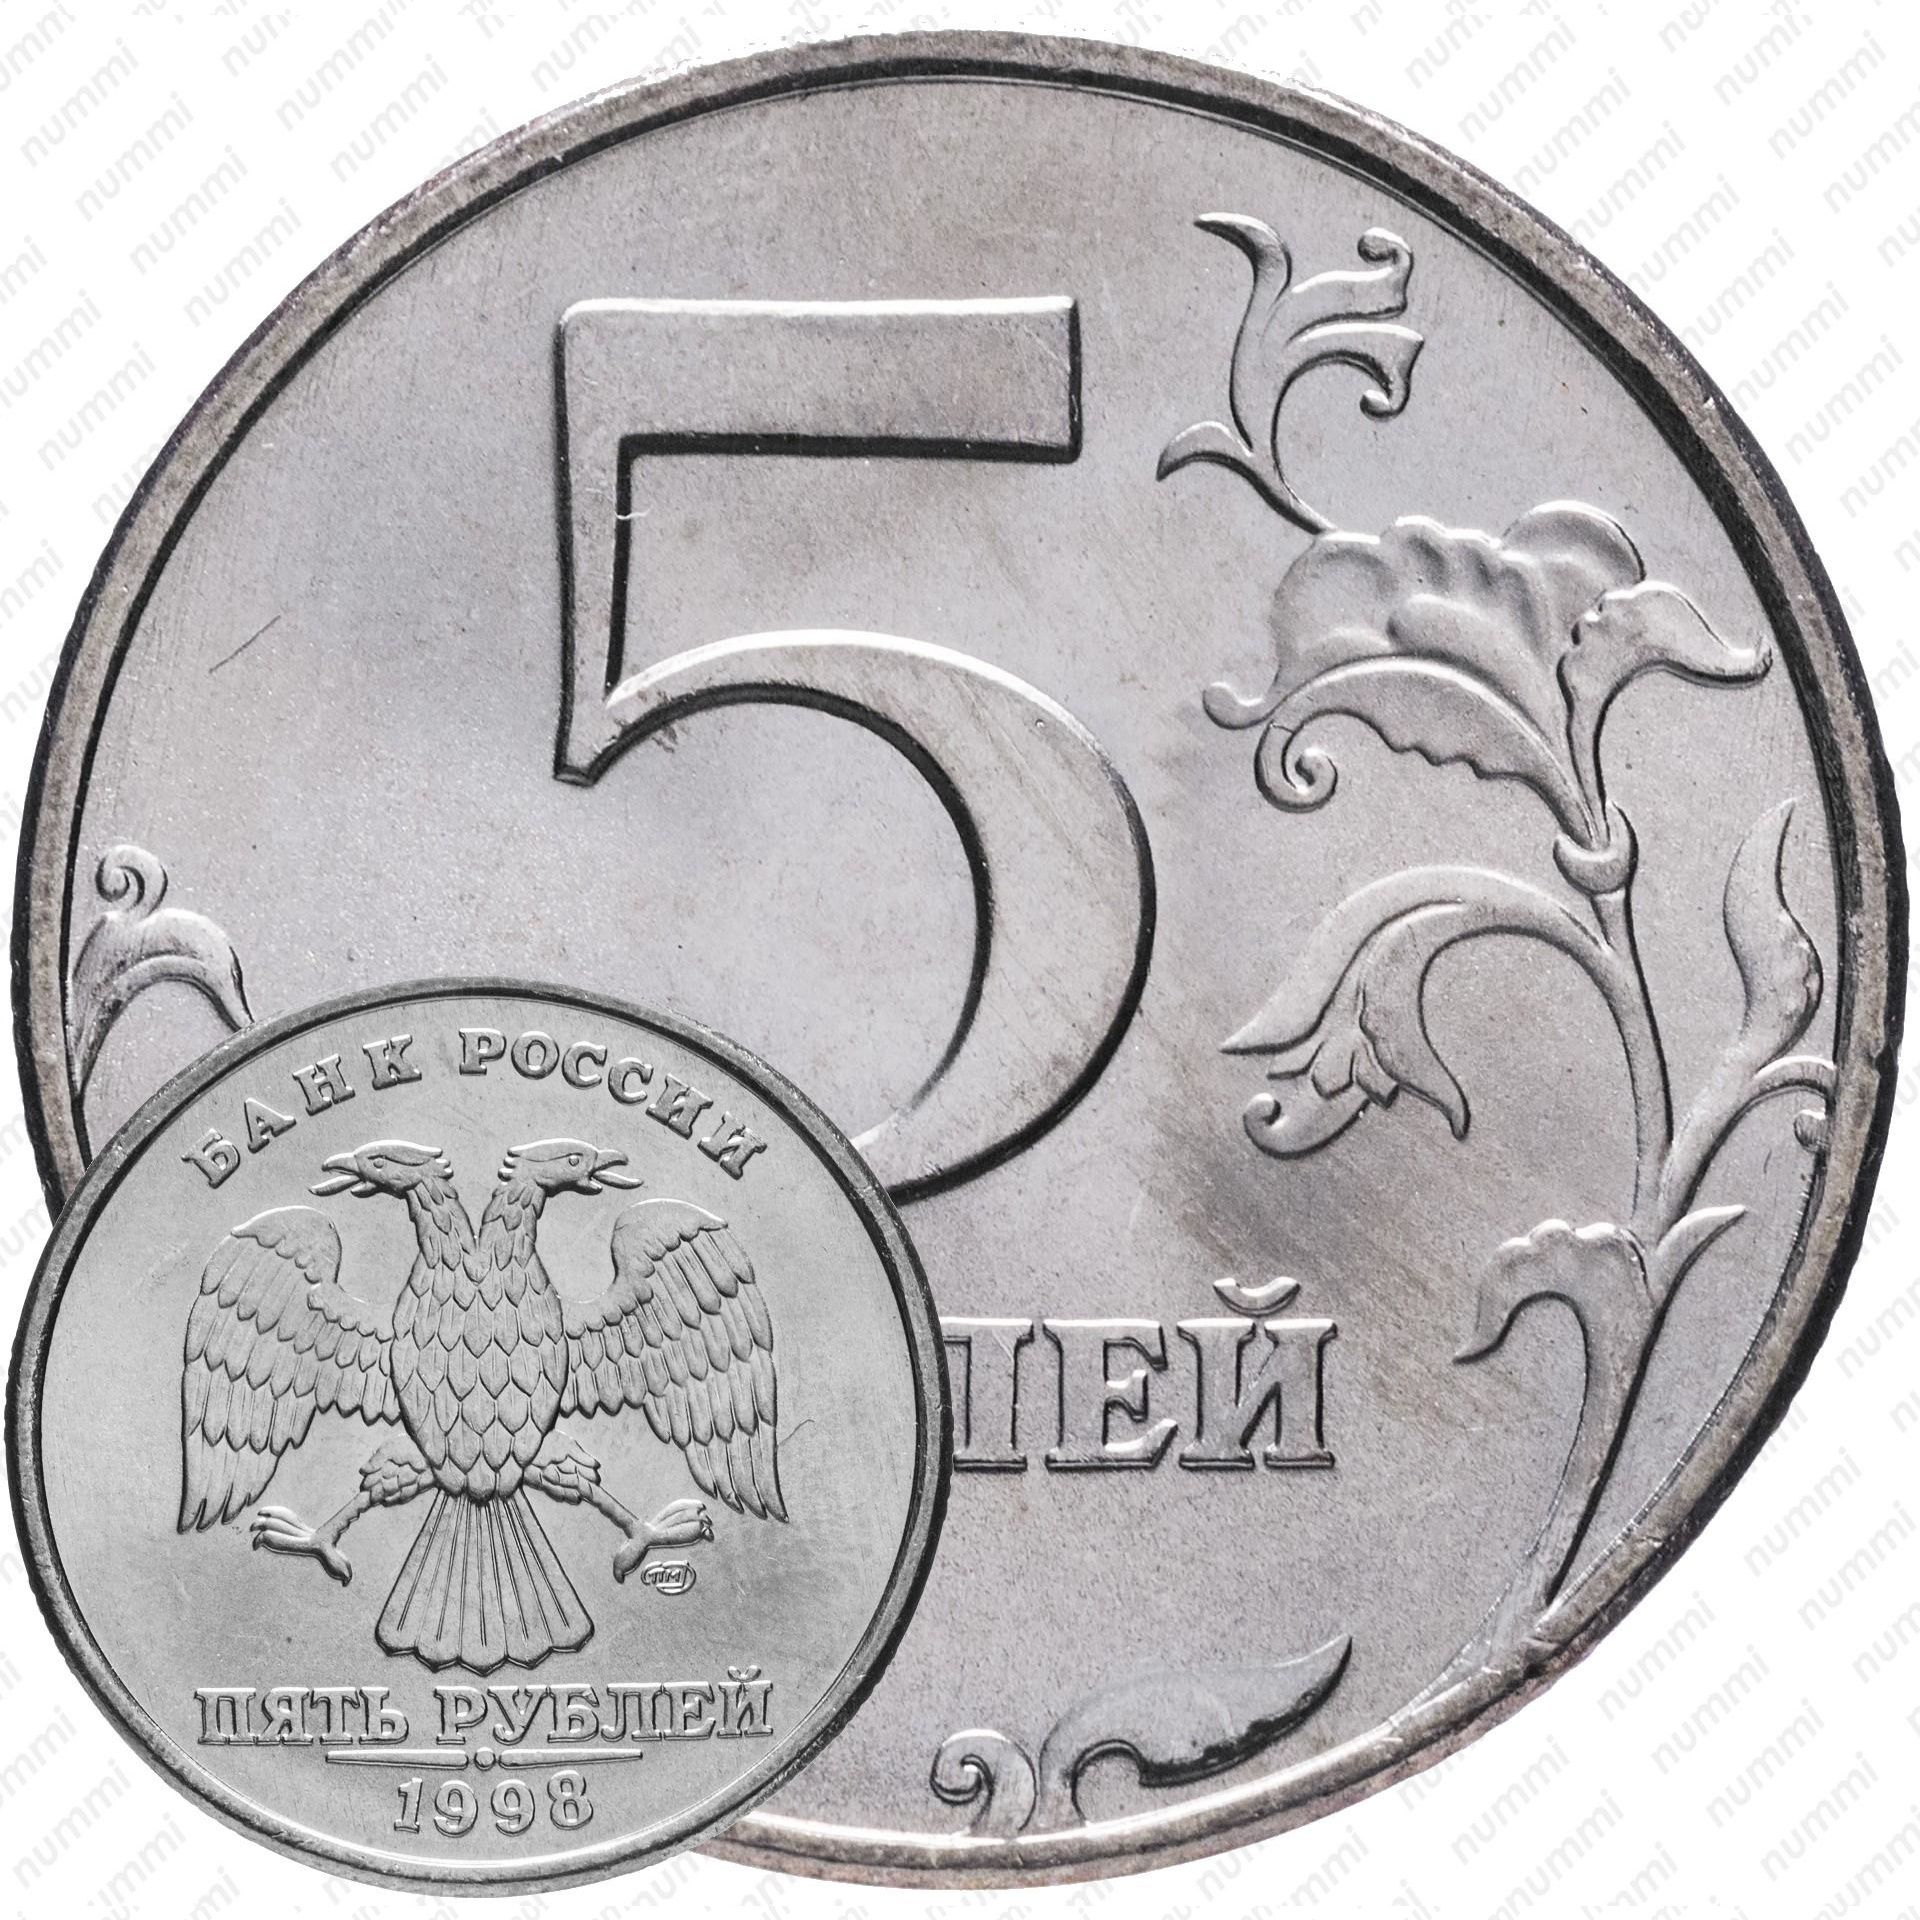 Цена монеты 5 рублей года СПМД, штемпель стоимость по аукционам на монету России.